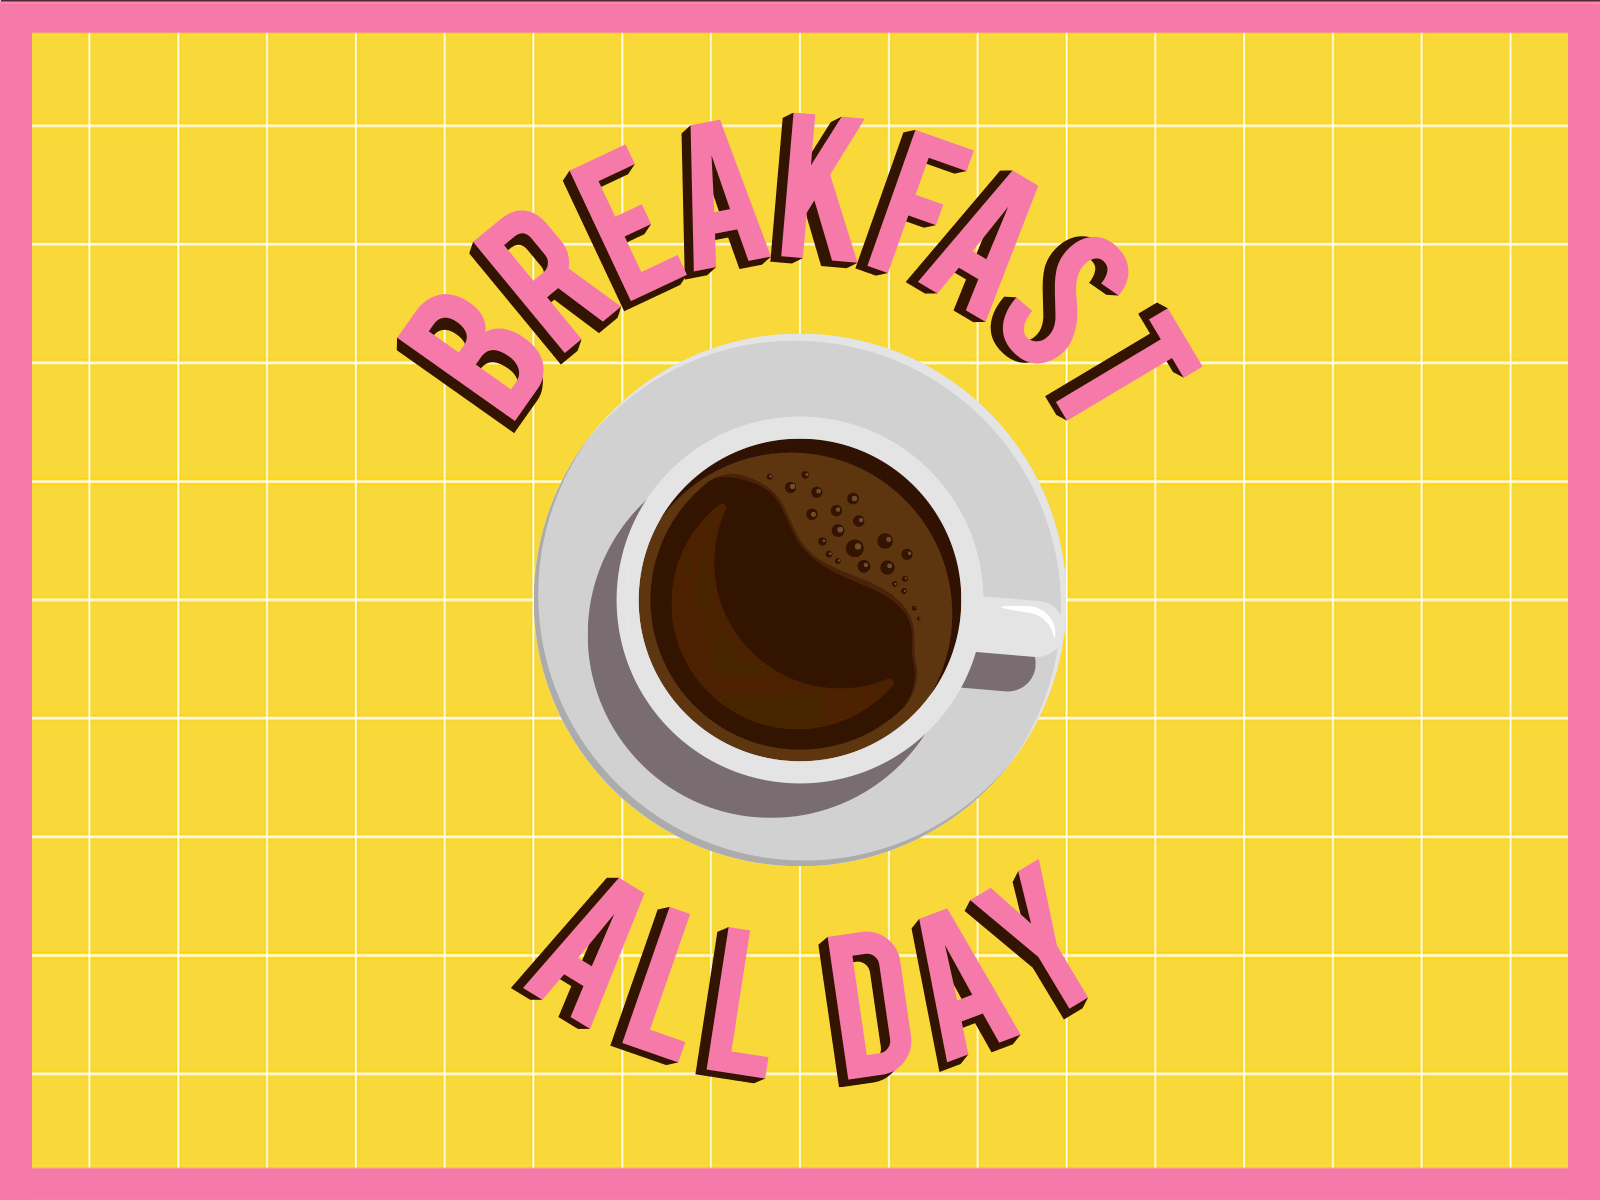 Breakfast all day 2d adobe illustrator animation breakfast coffee for interface illustration illustration digital logo minimal morning ui vector